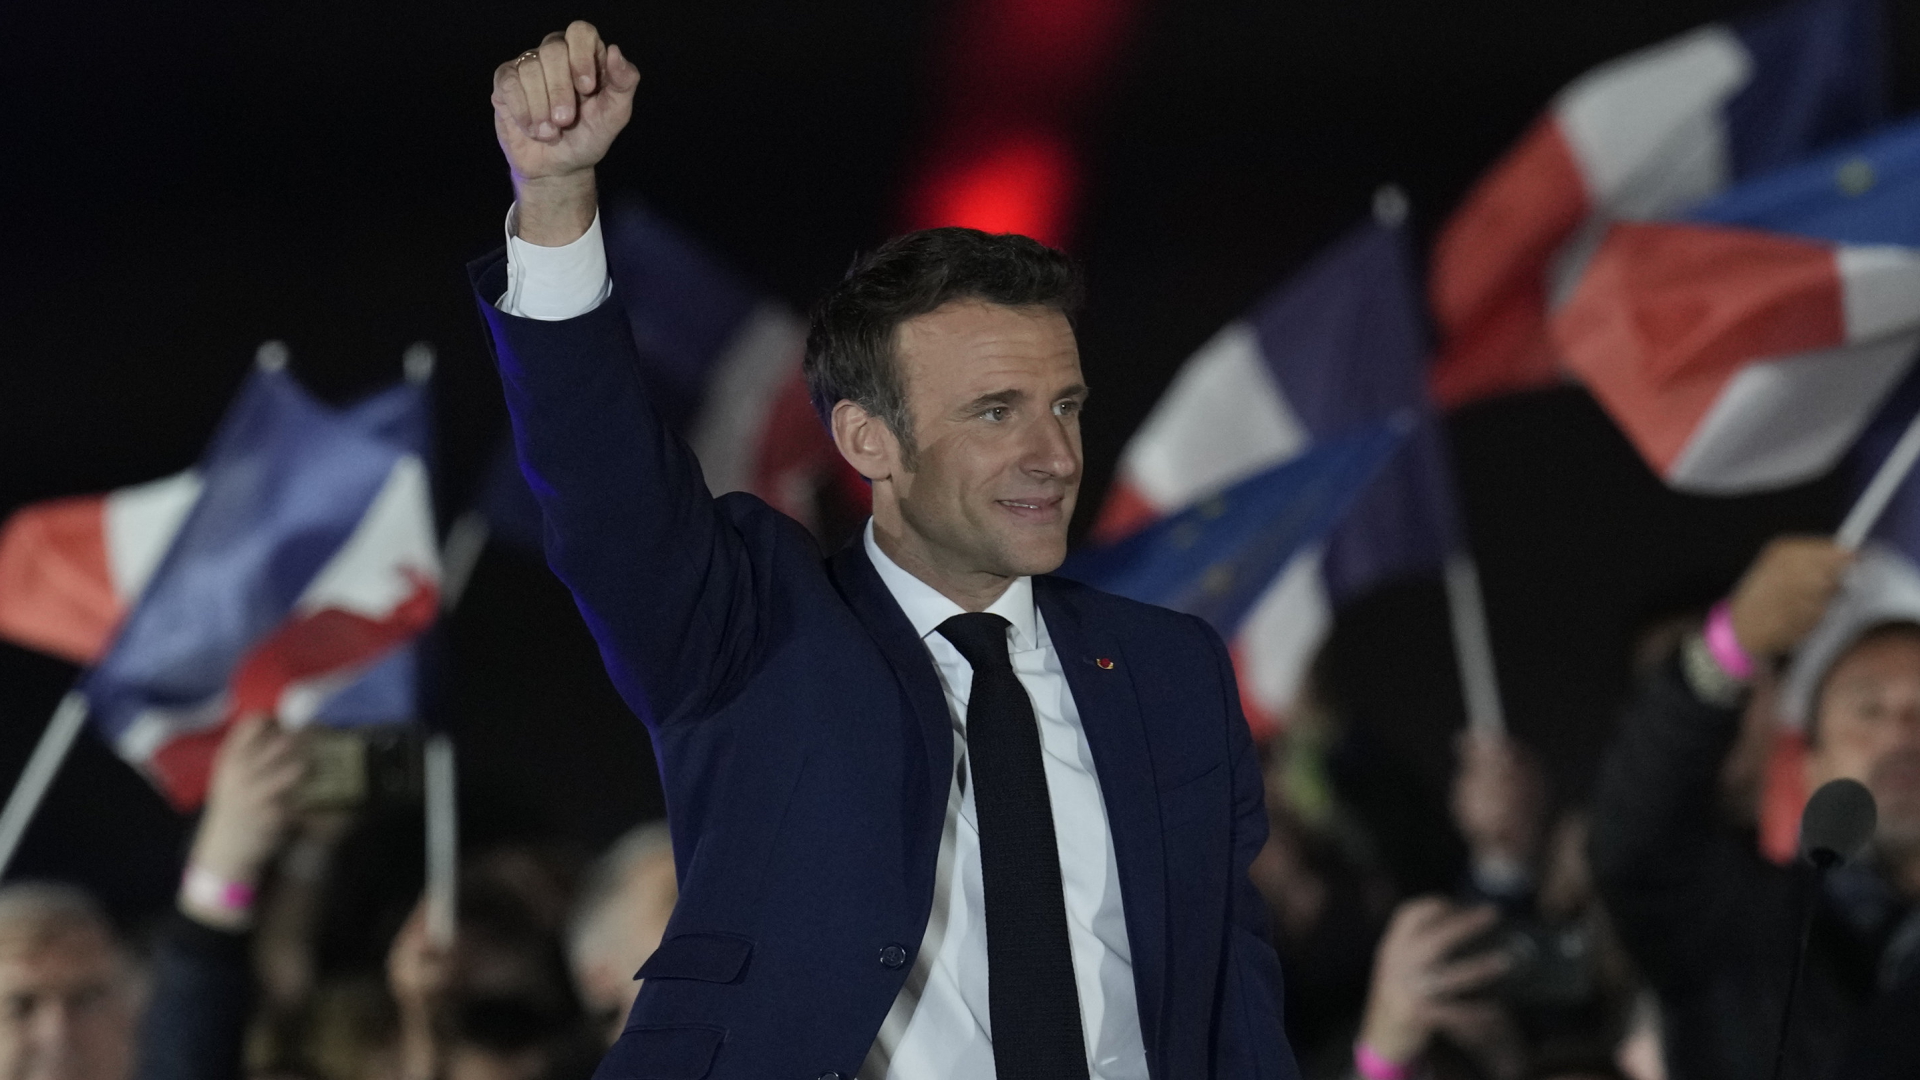 Emmanuel Macron feiert seinen Wahlsieg | AP